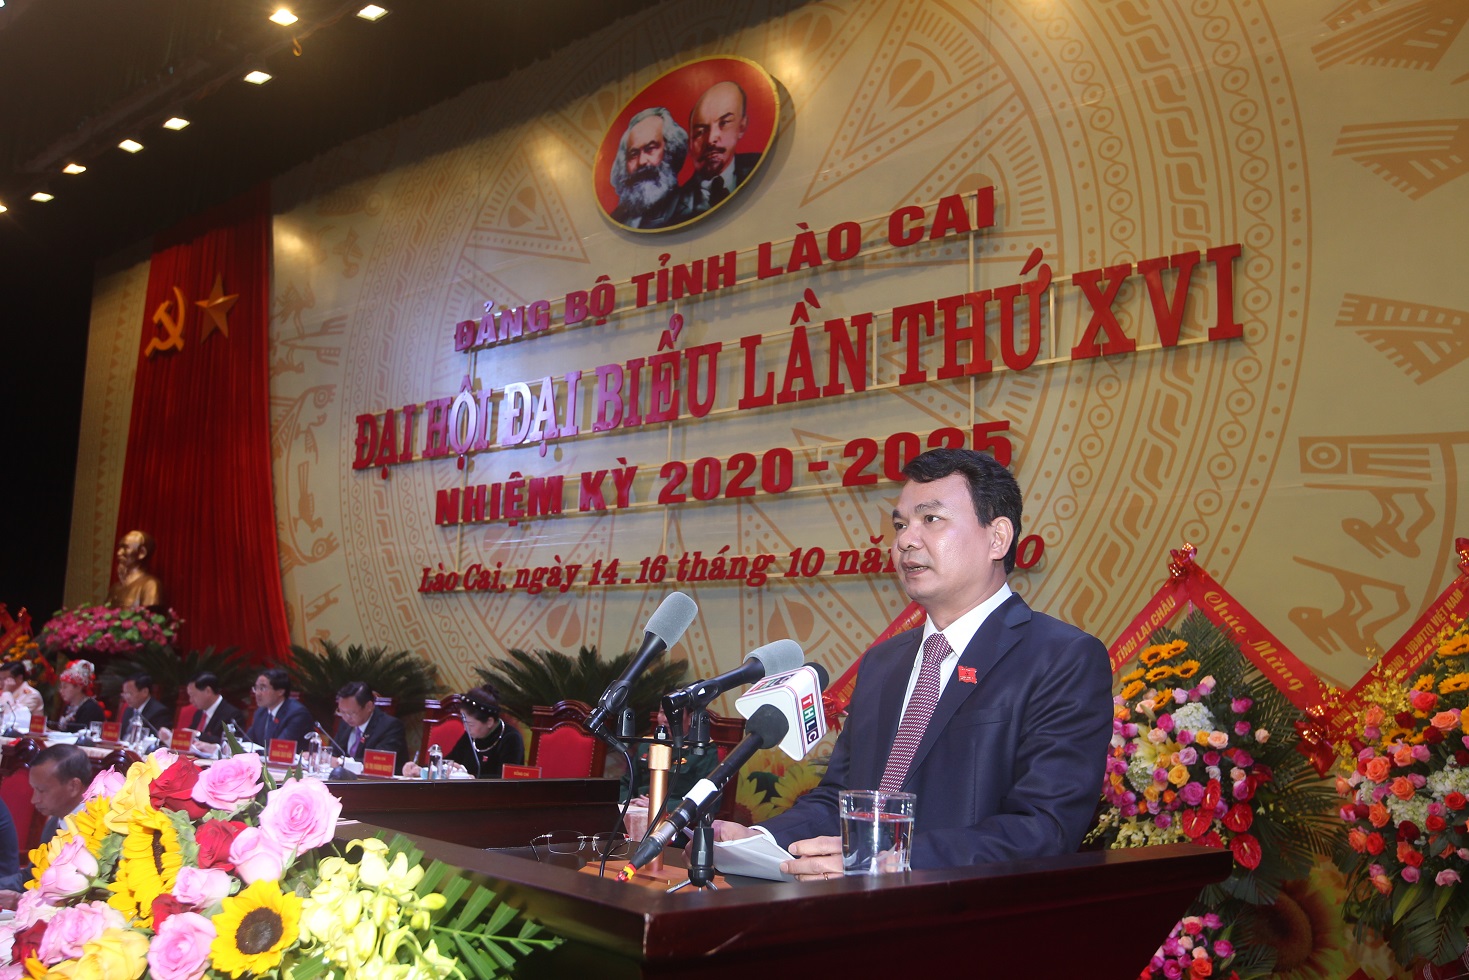 Ông Đặng Xuân Phong, tân Bí thư Tỉnh ủy Lào Cai nhiệm kỳ 2020-2025